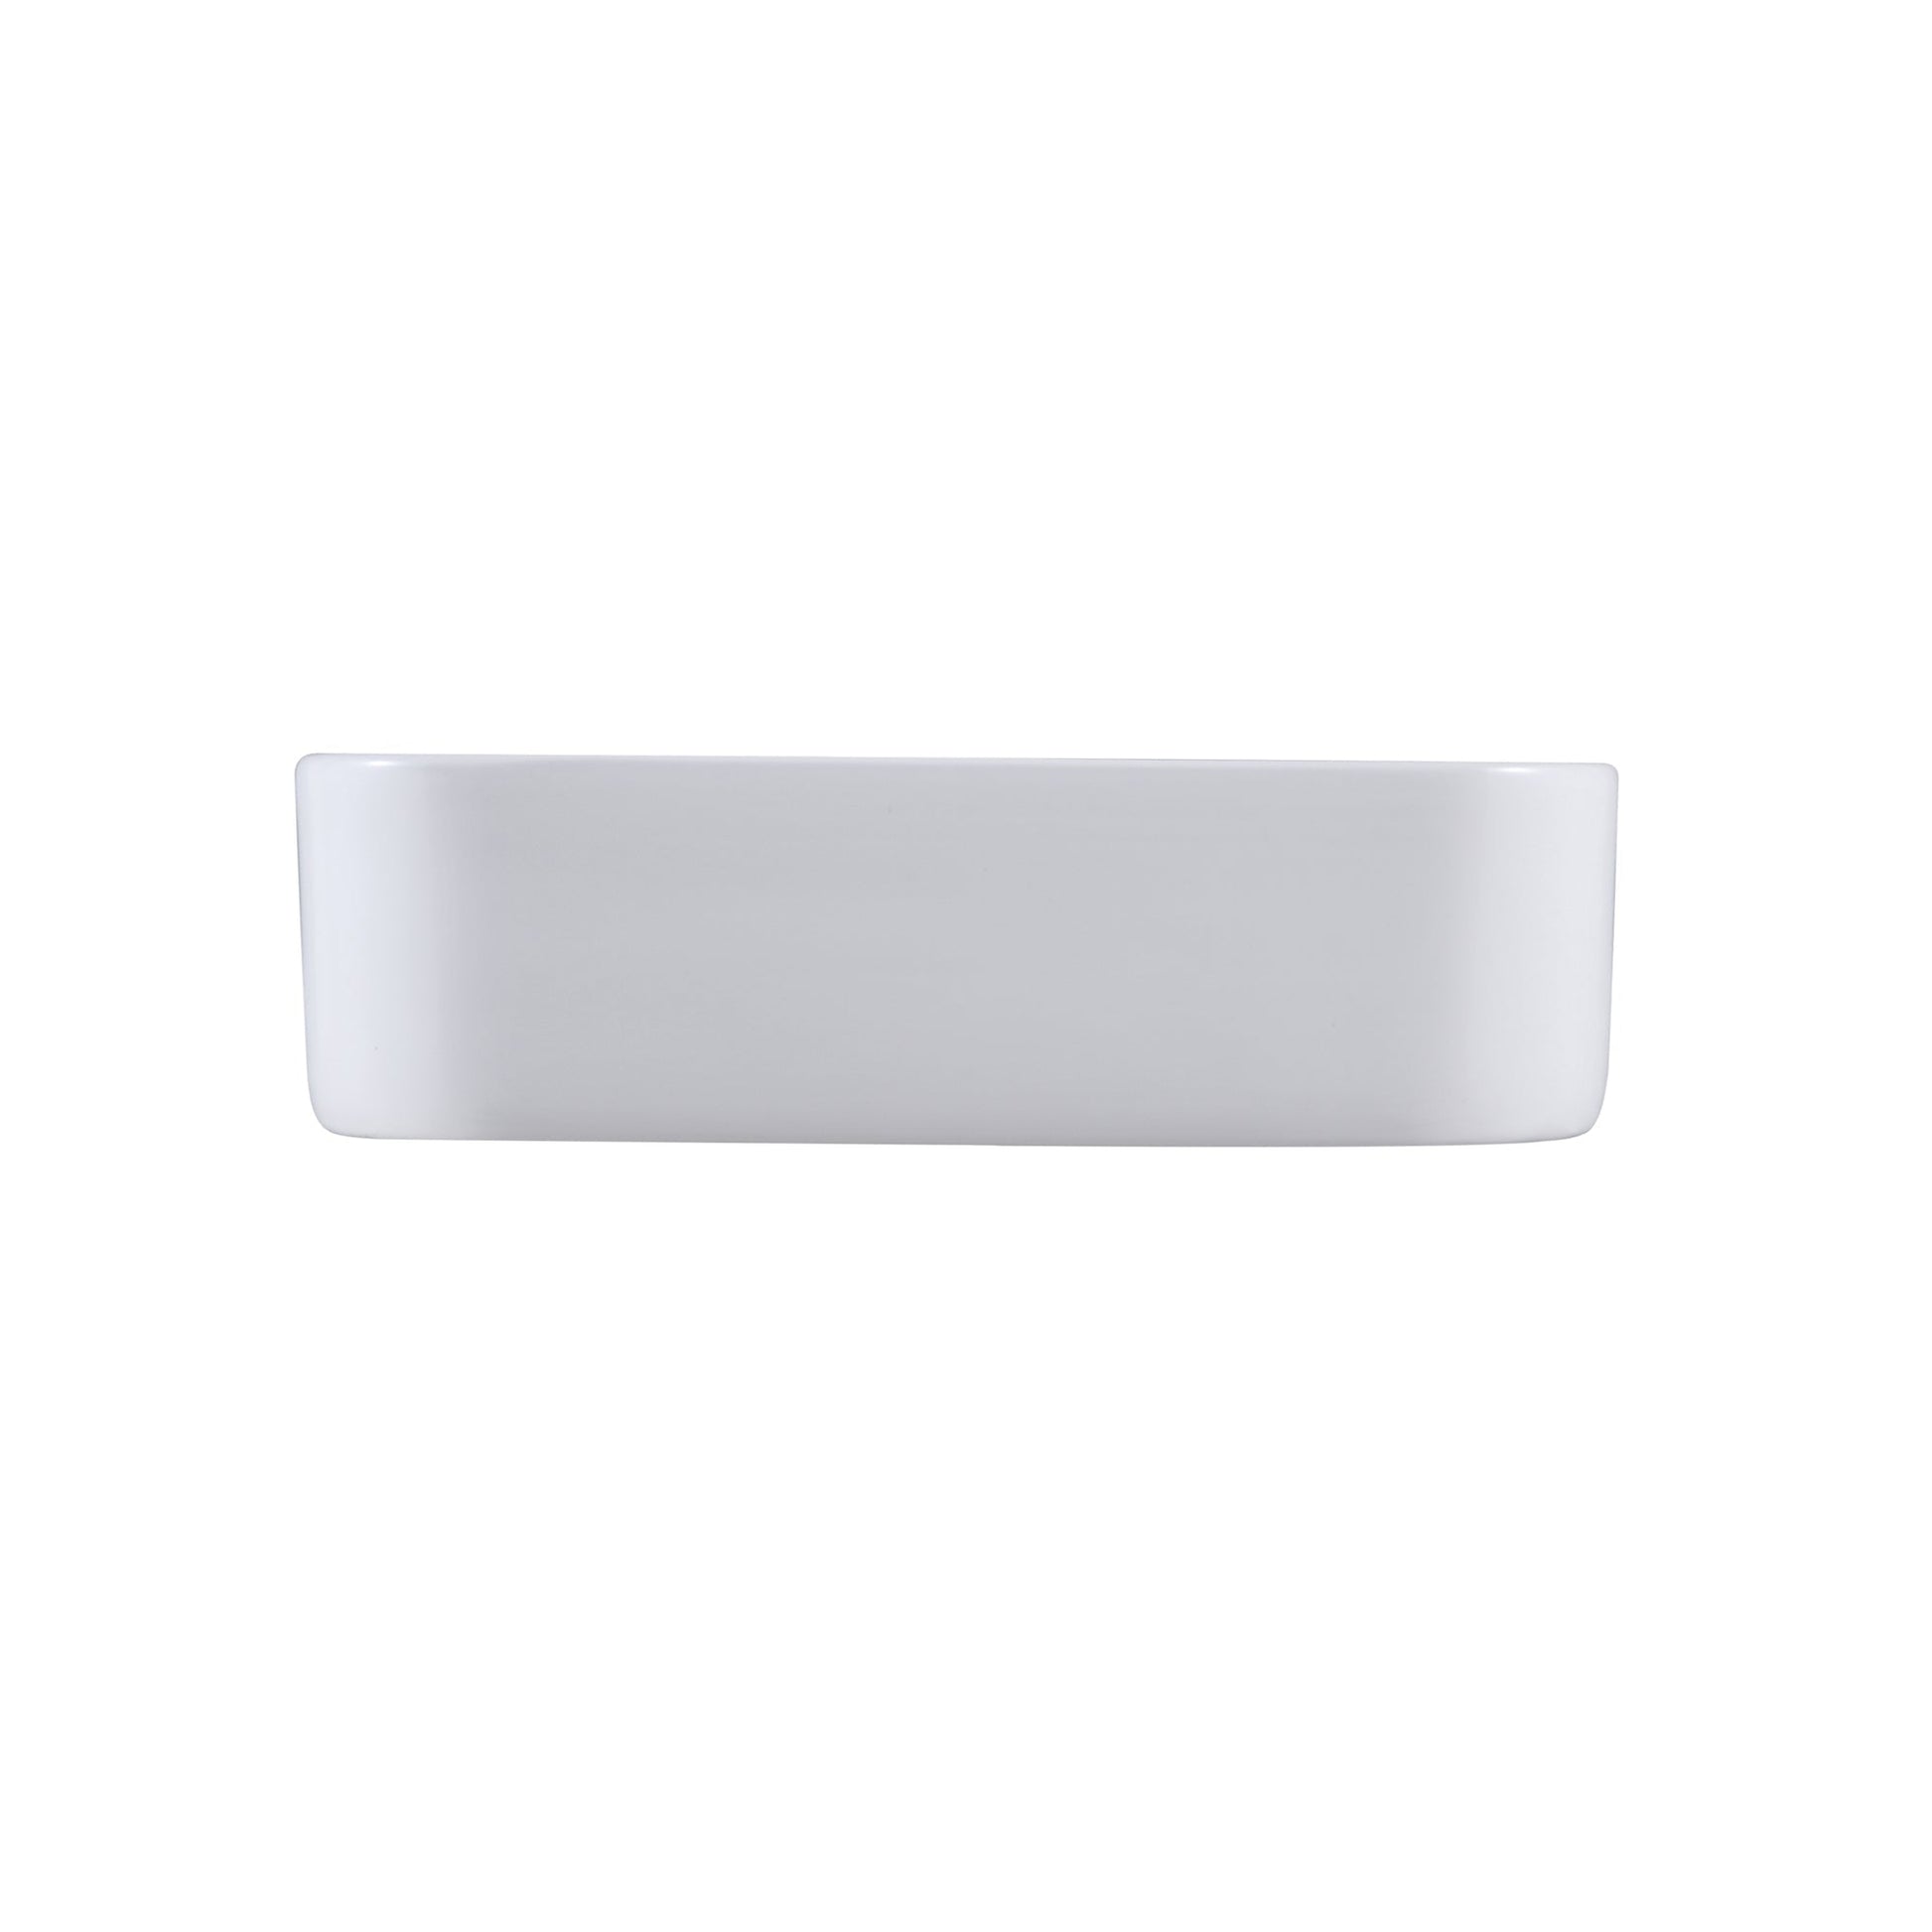 Altair Leonis 17" Square White Finish Ceramic Vessel Bathroom Vanity Sink